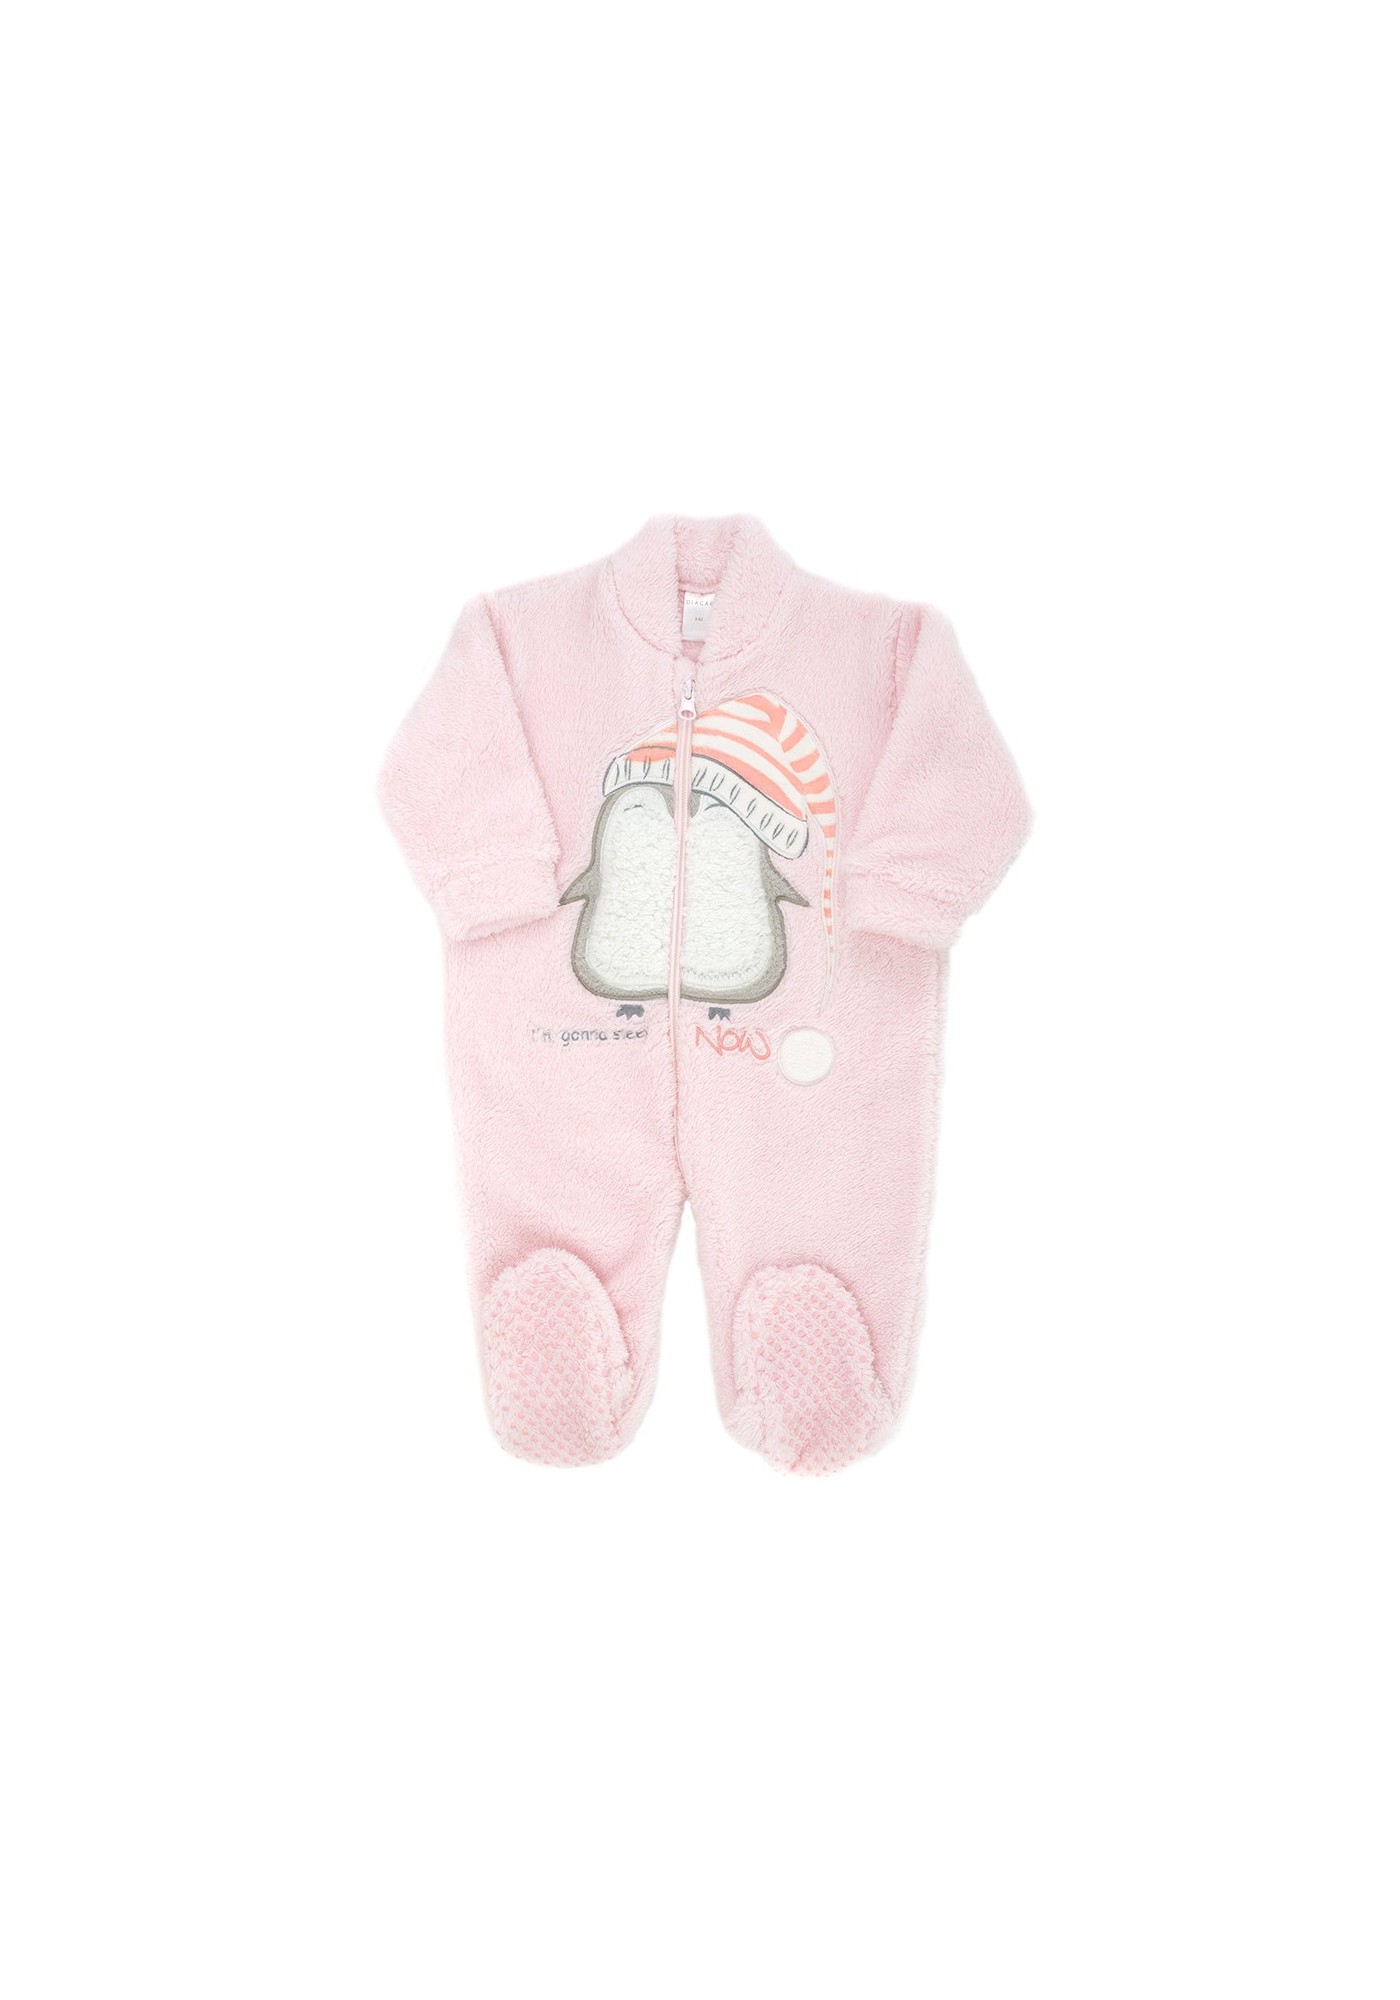 Pijama manta bebe muy suave y aterciopelado para abrigar al bebé.